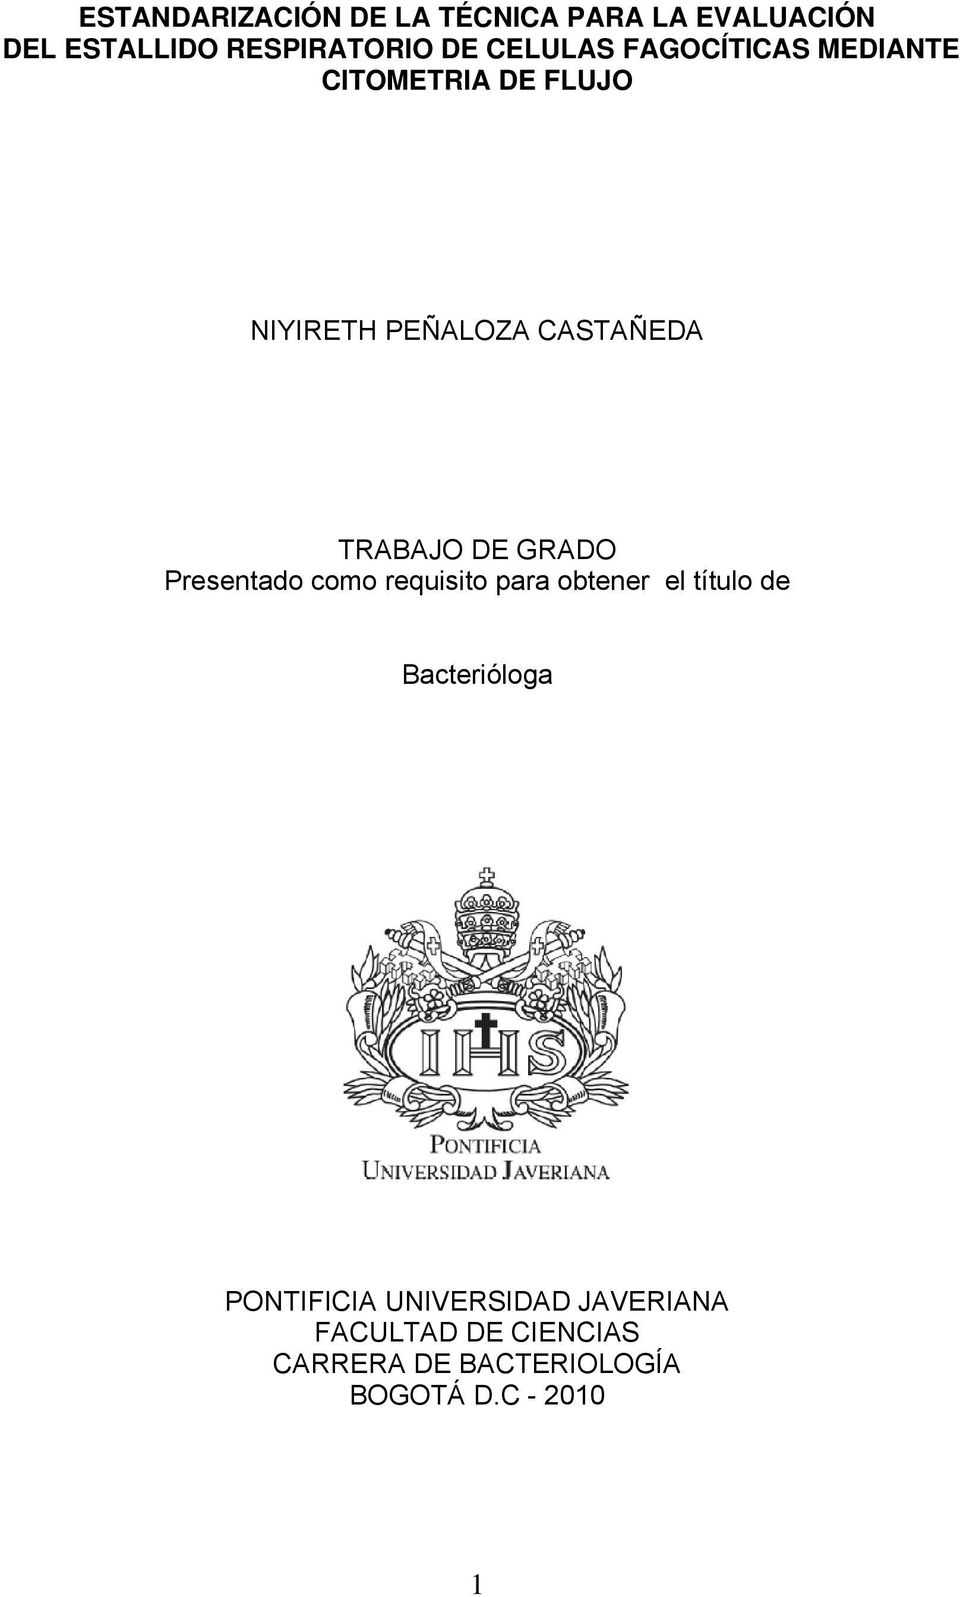 TRABAJO DE GRADO Presentado como requisito para obtener el título de Bacterióloga